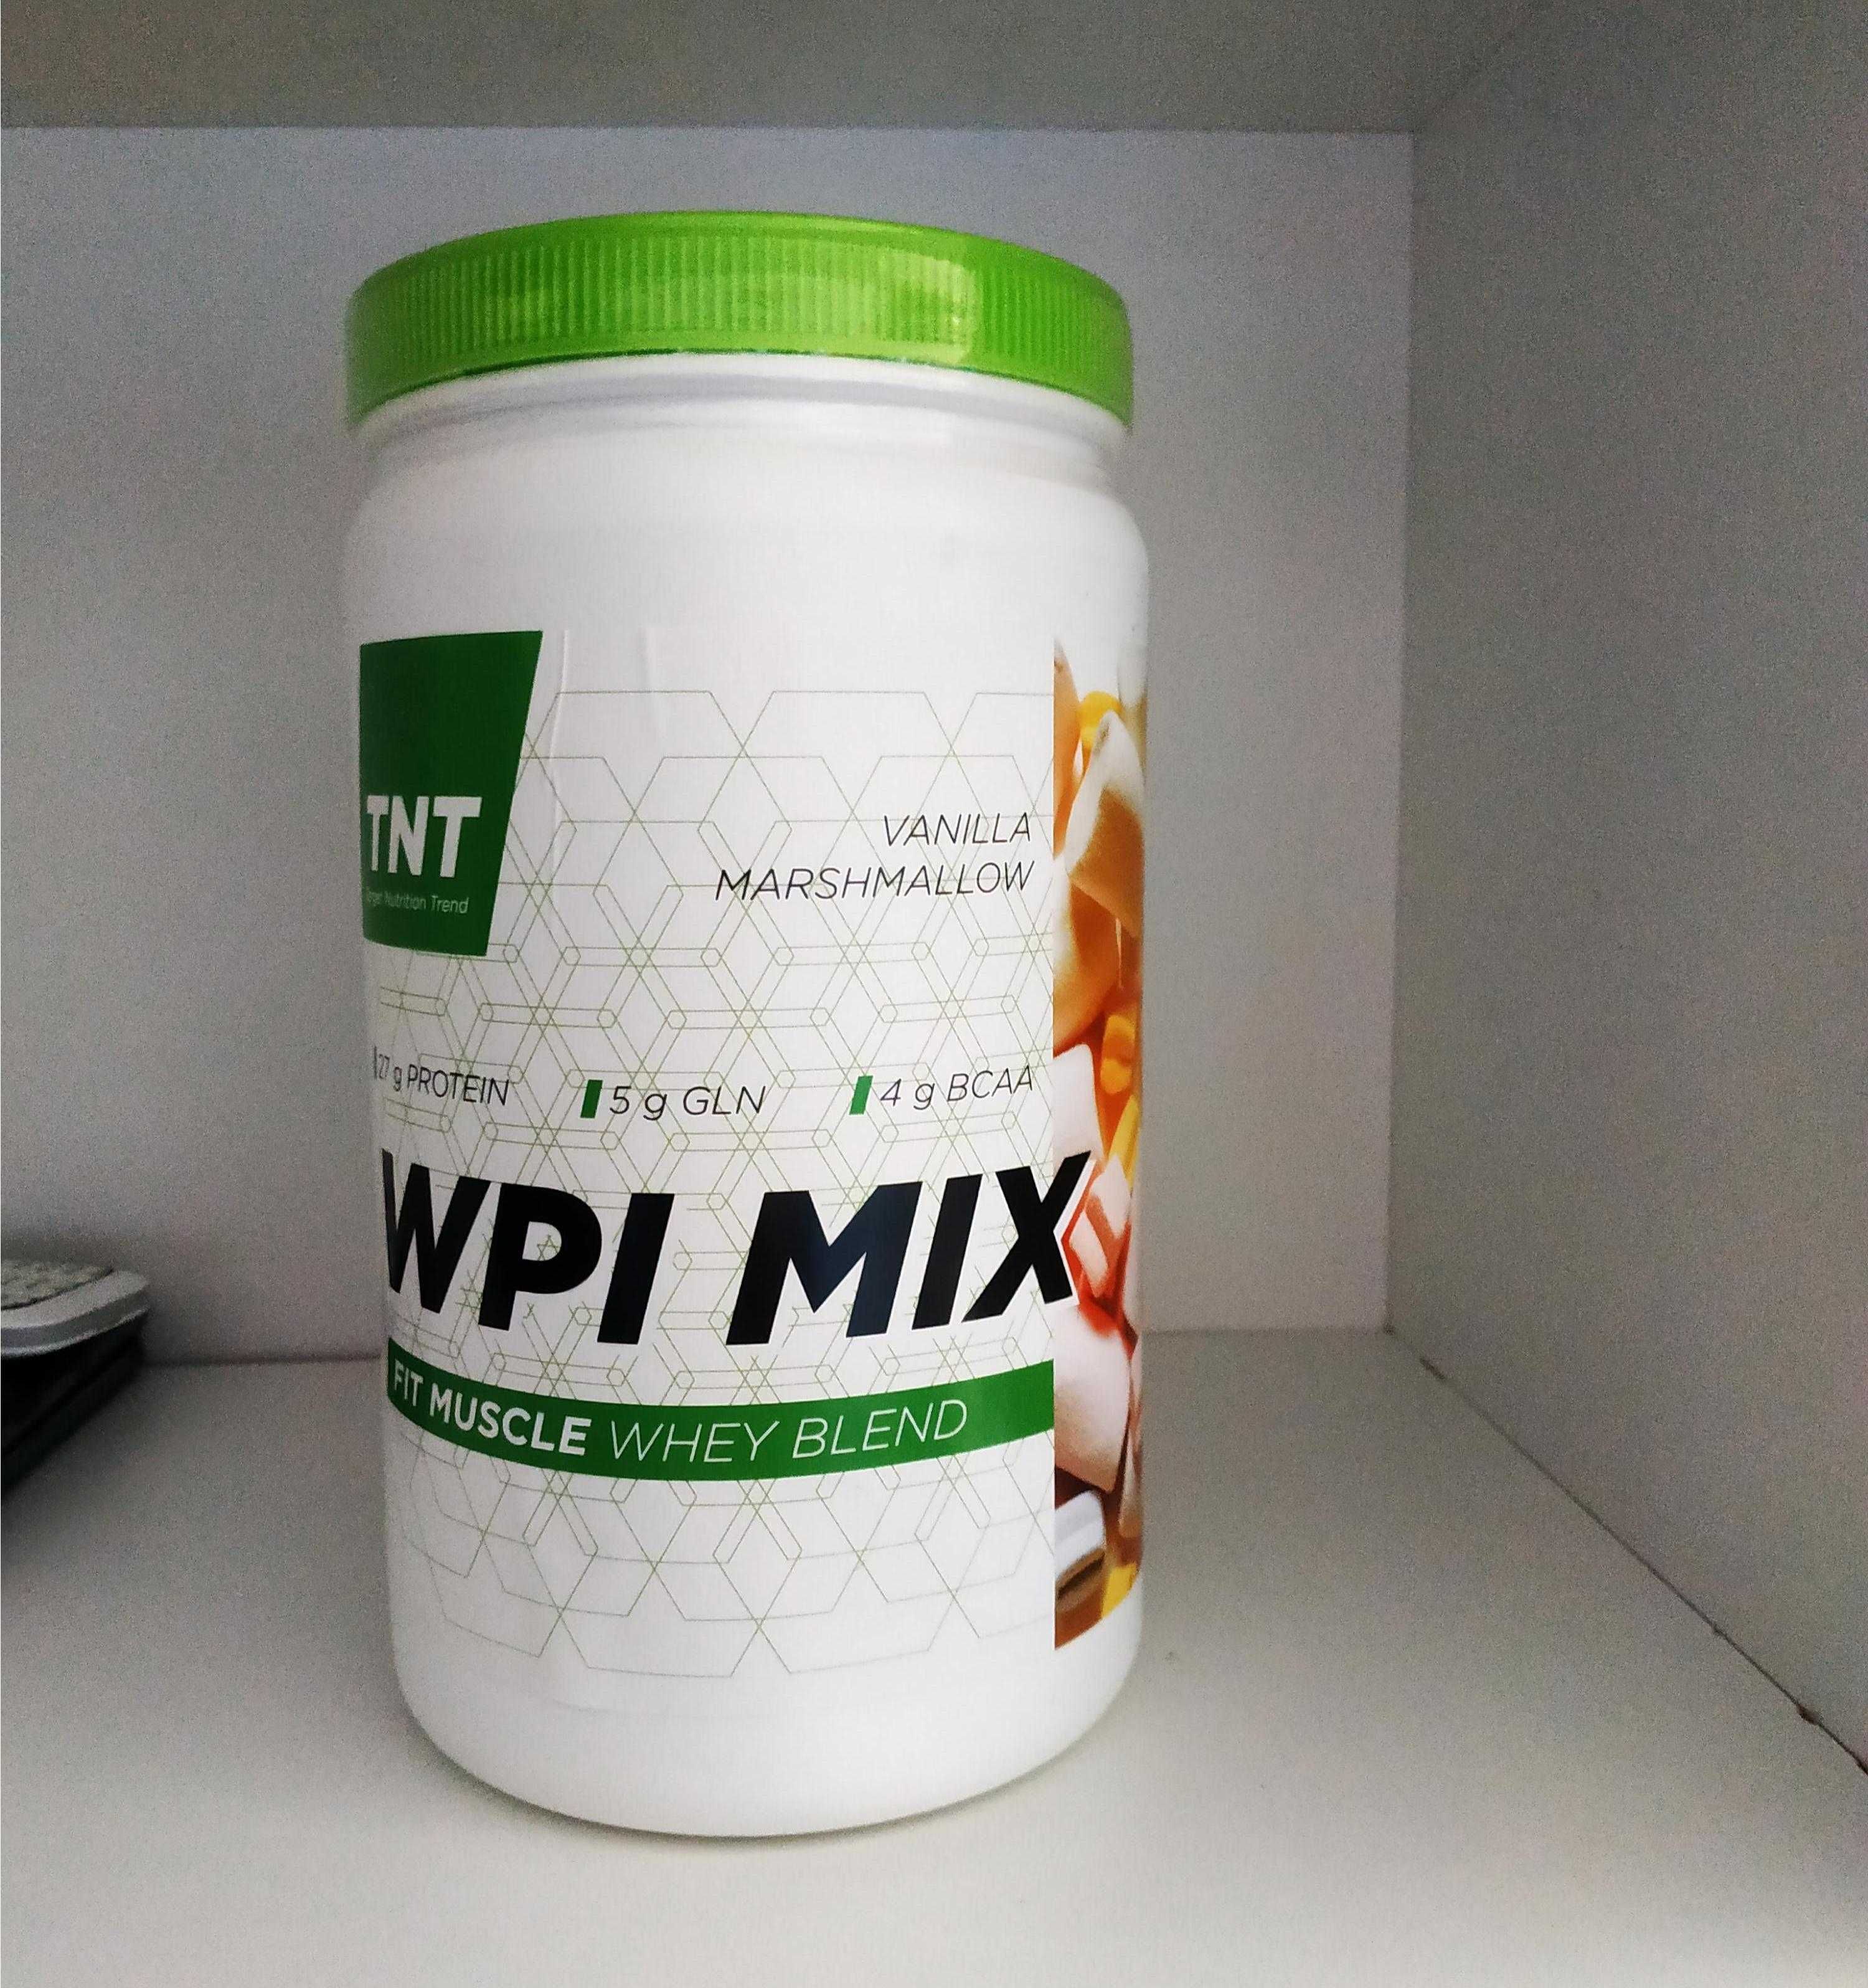 Протеин изолят WPI MIX. Идеально для похудения. Белковый коктейль